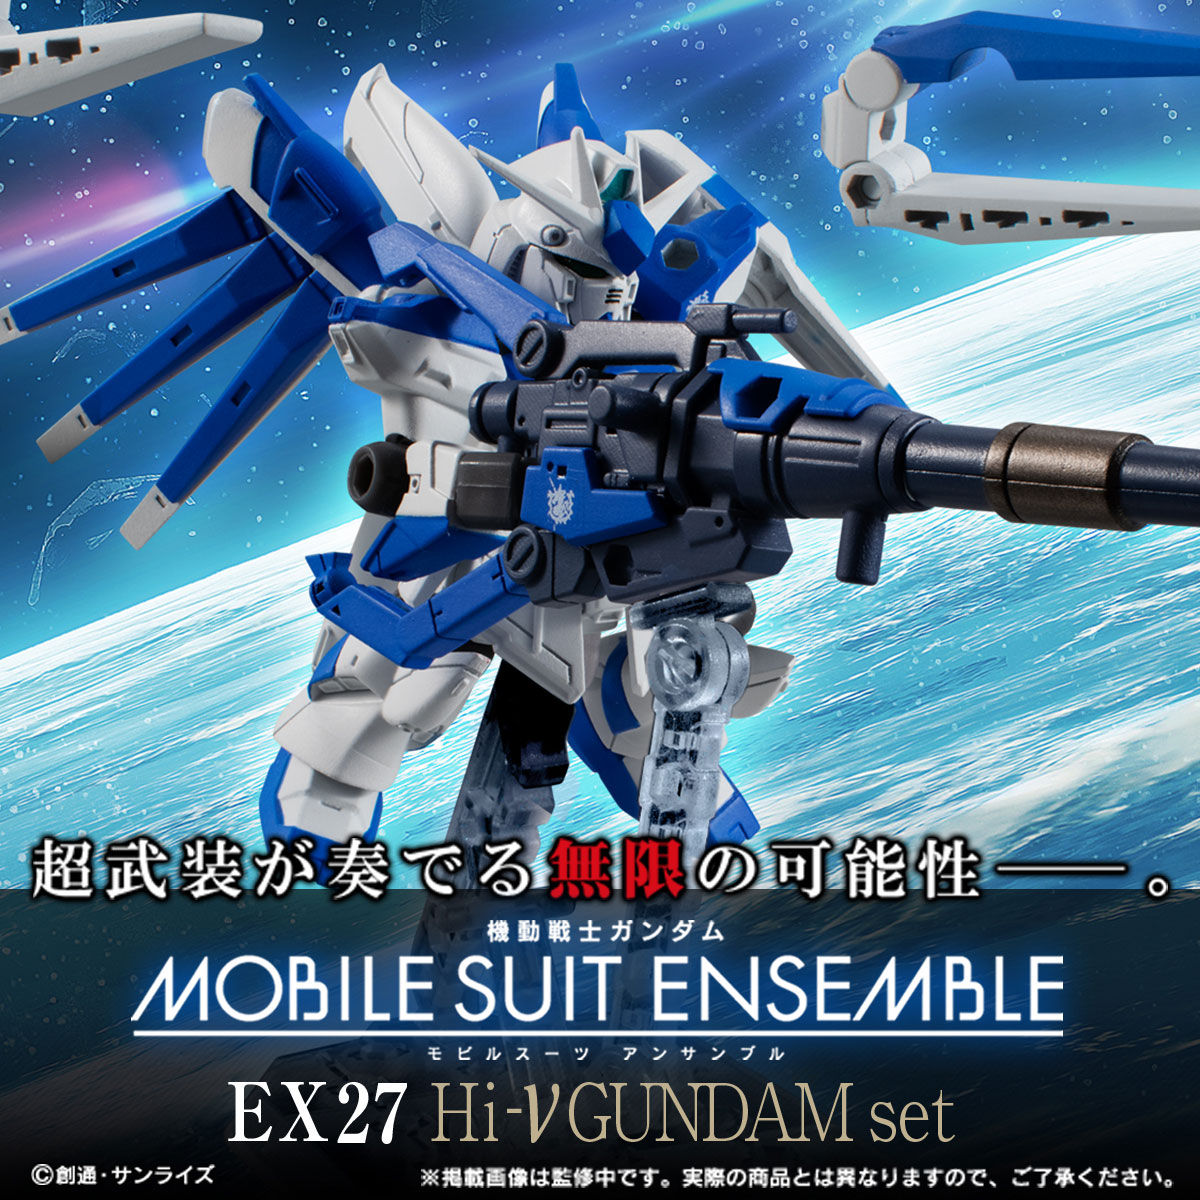 【限定販売】MOBILE SUIT ENSEMBLE『EX27 Hi-νガンダムセット』デフォルメ可動フィギュア-001